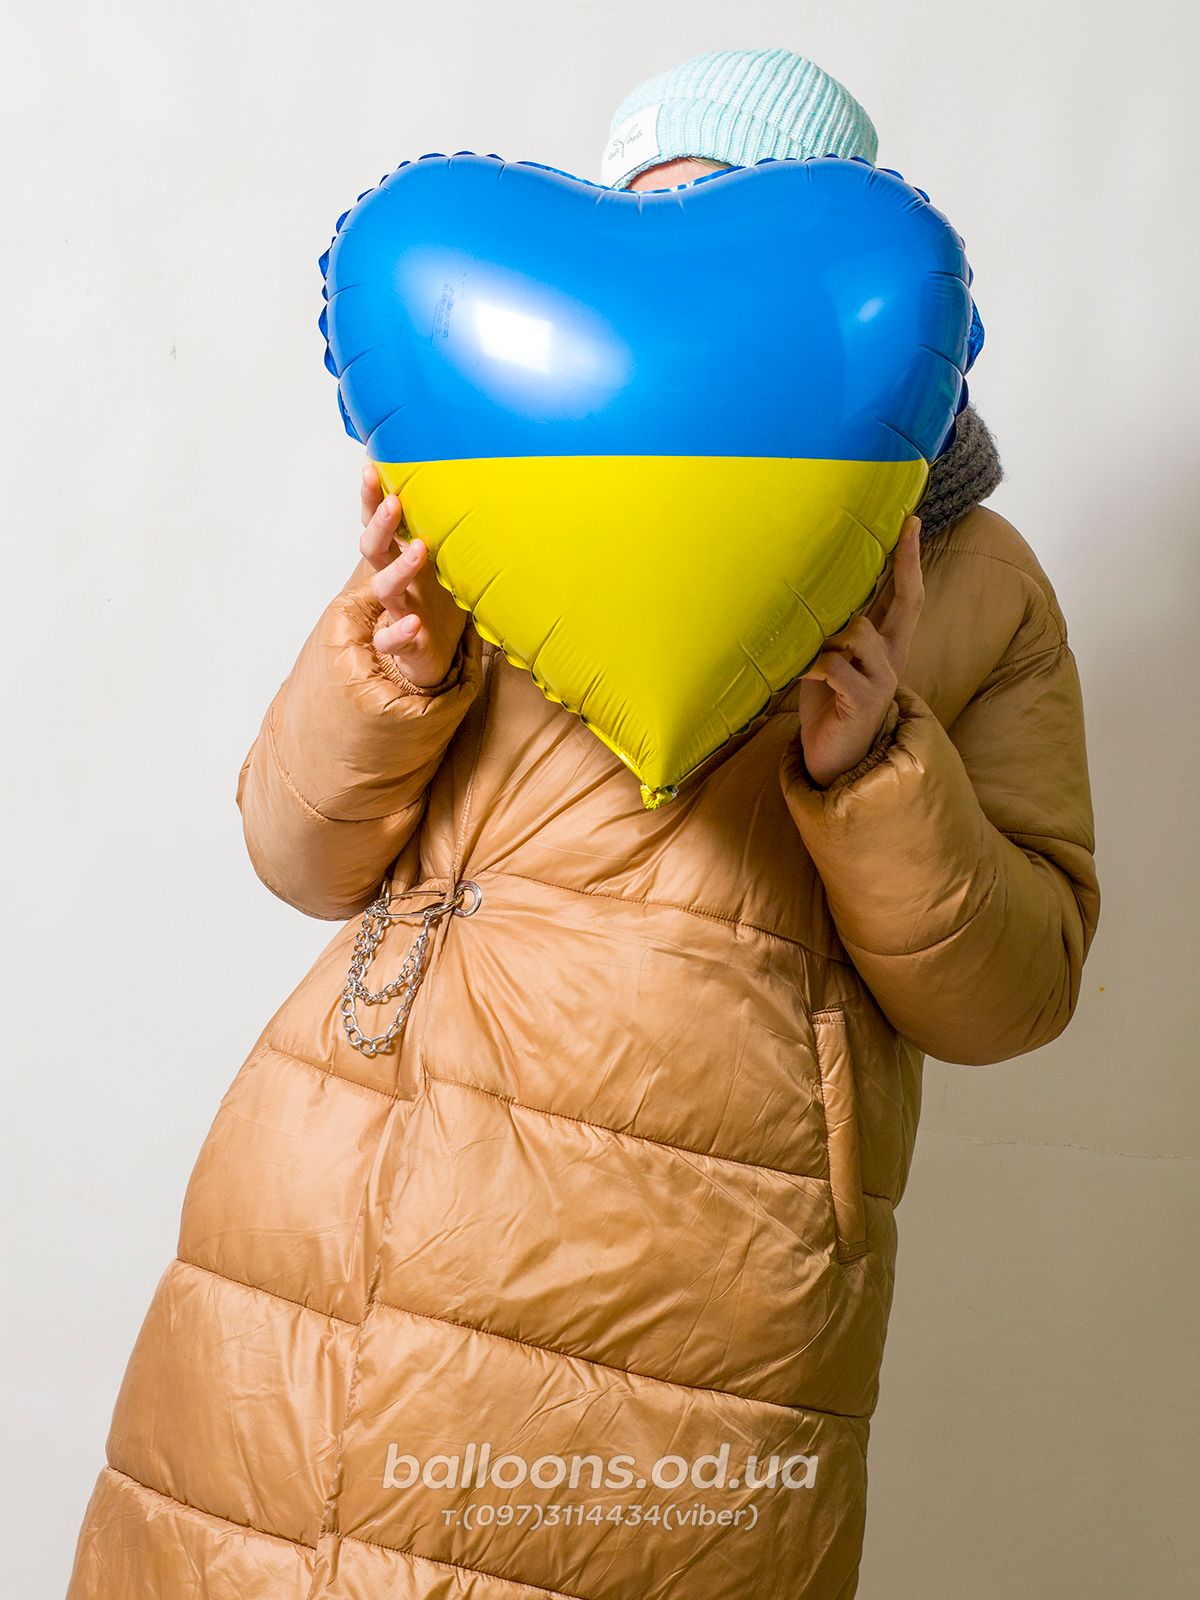 Шарик - сердце с флагом Украины